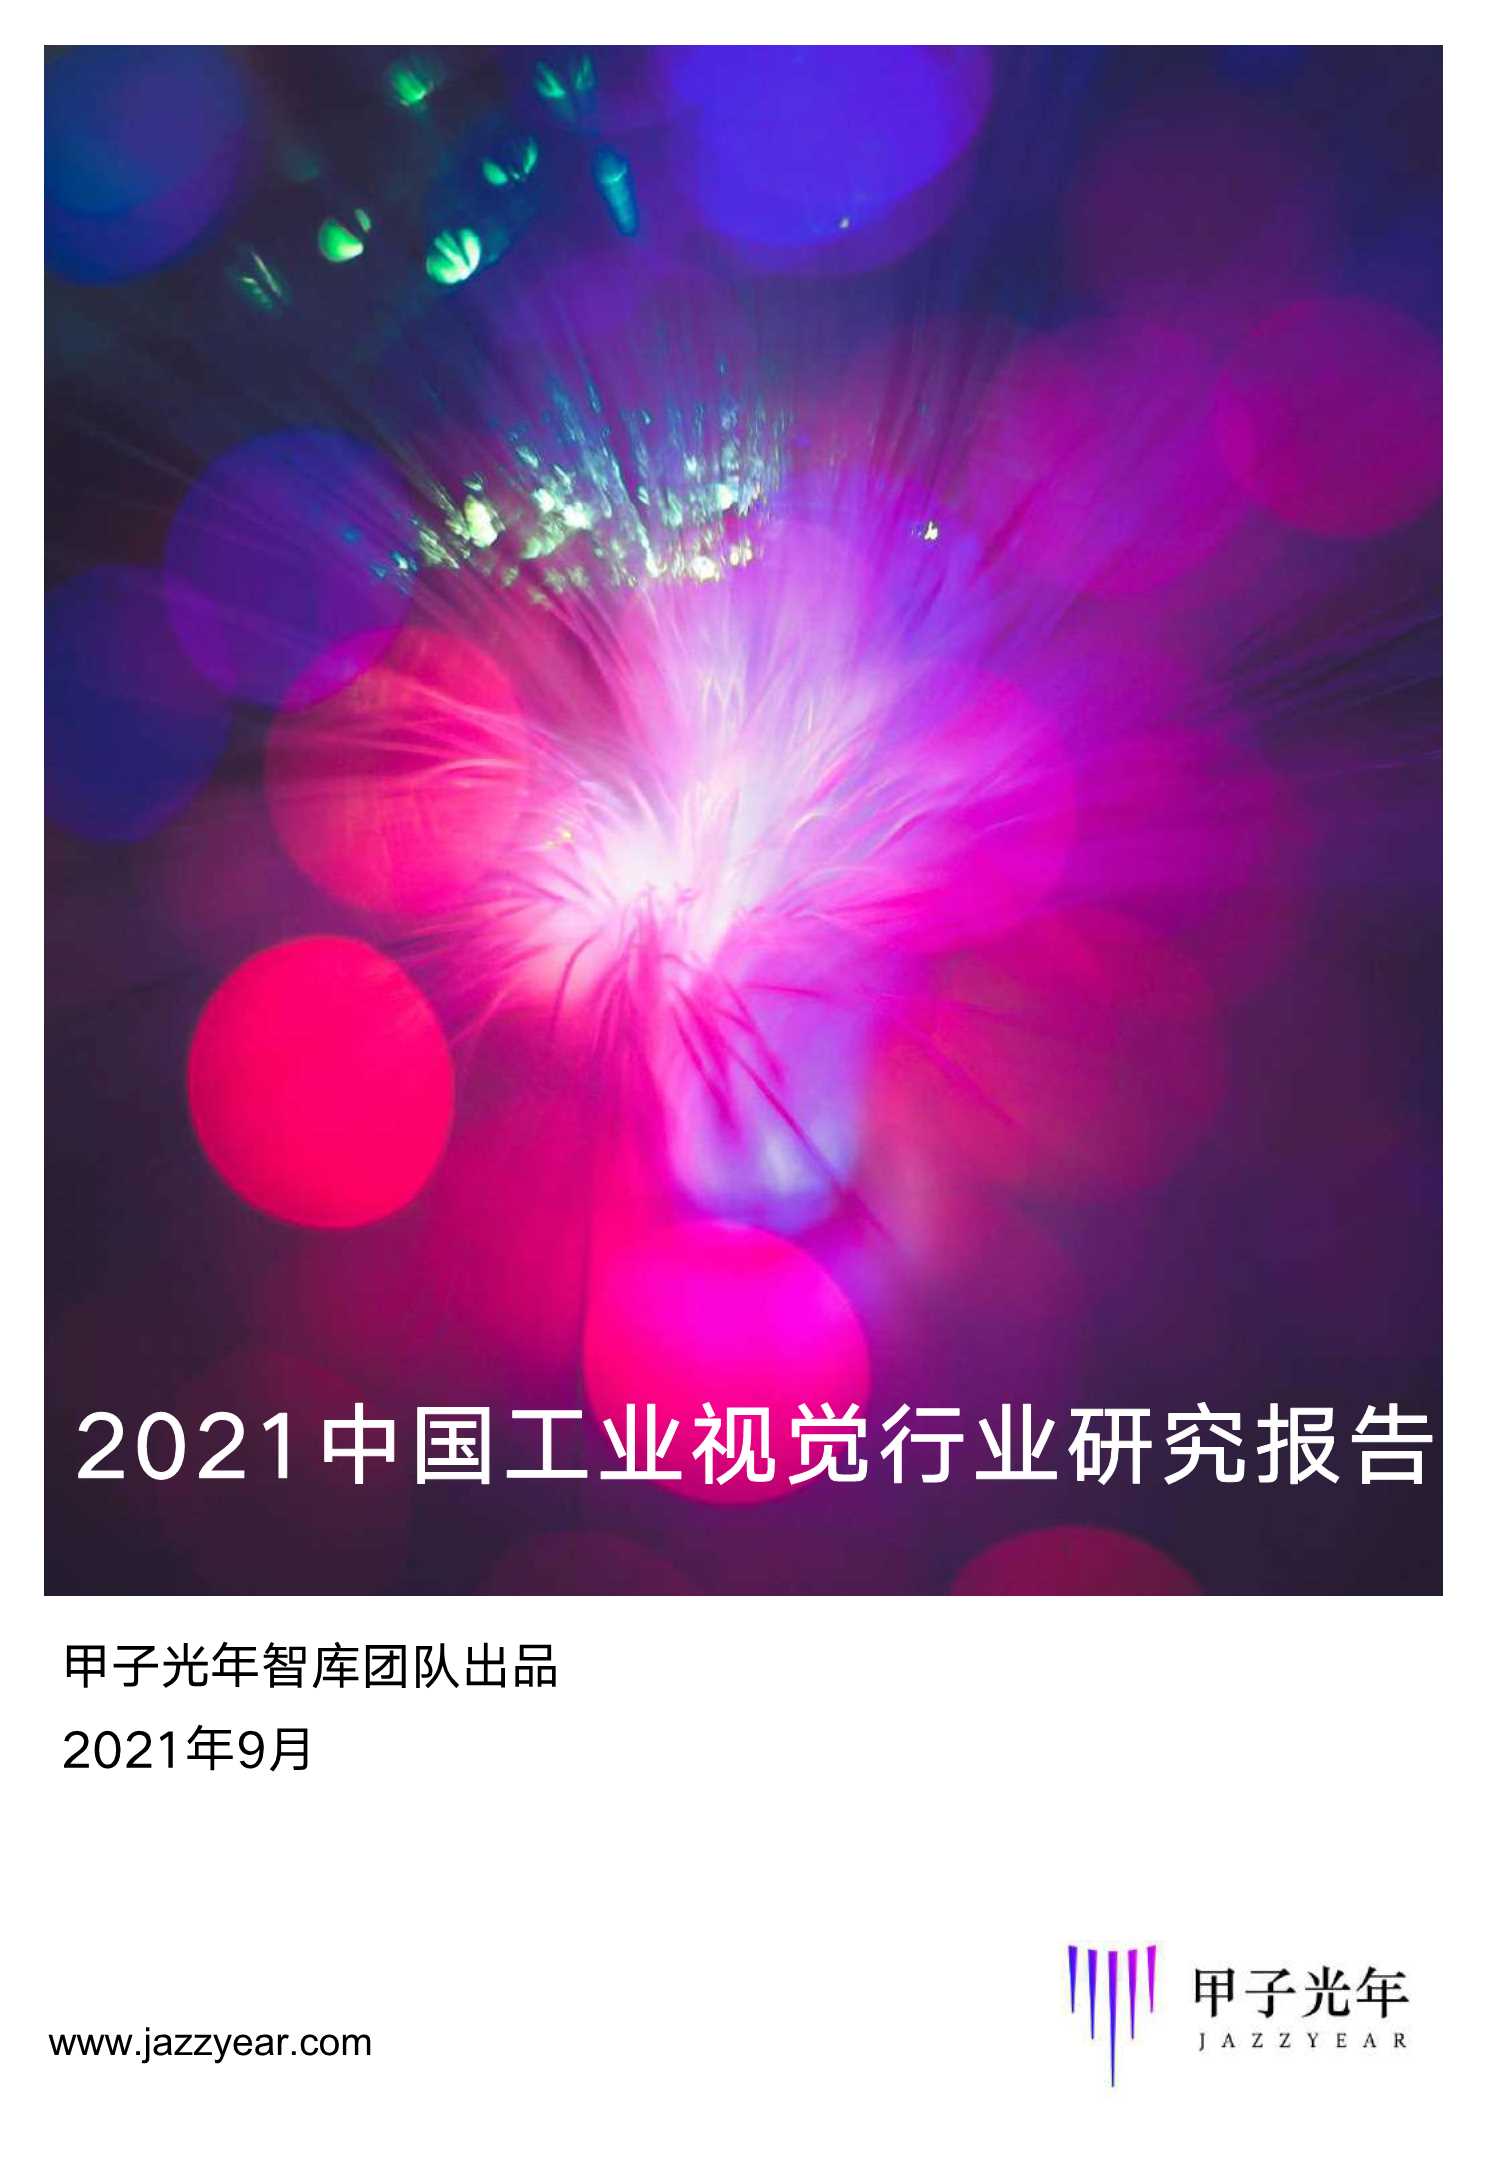 甲子光年-2021工业视觉行业研究报告-2021.09-33页